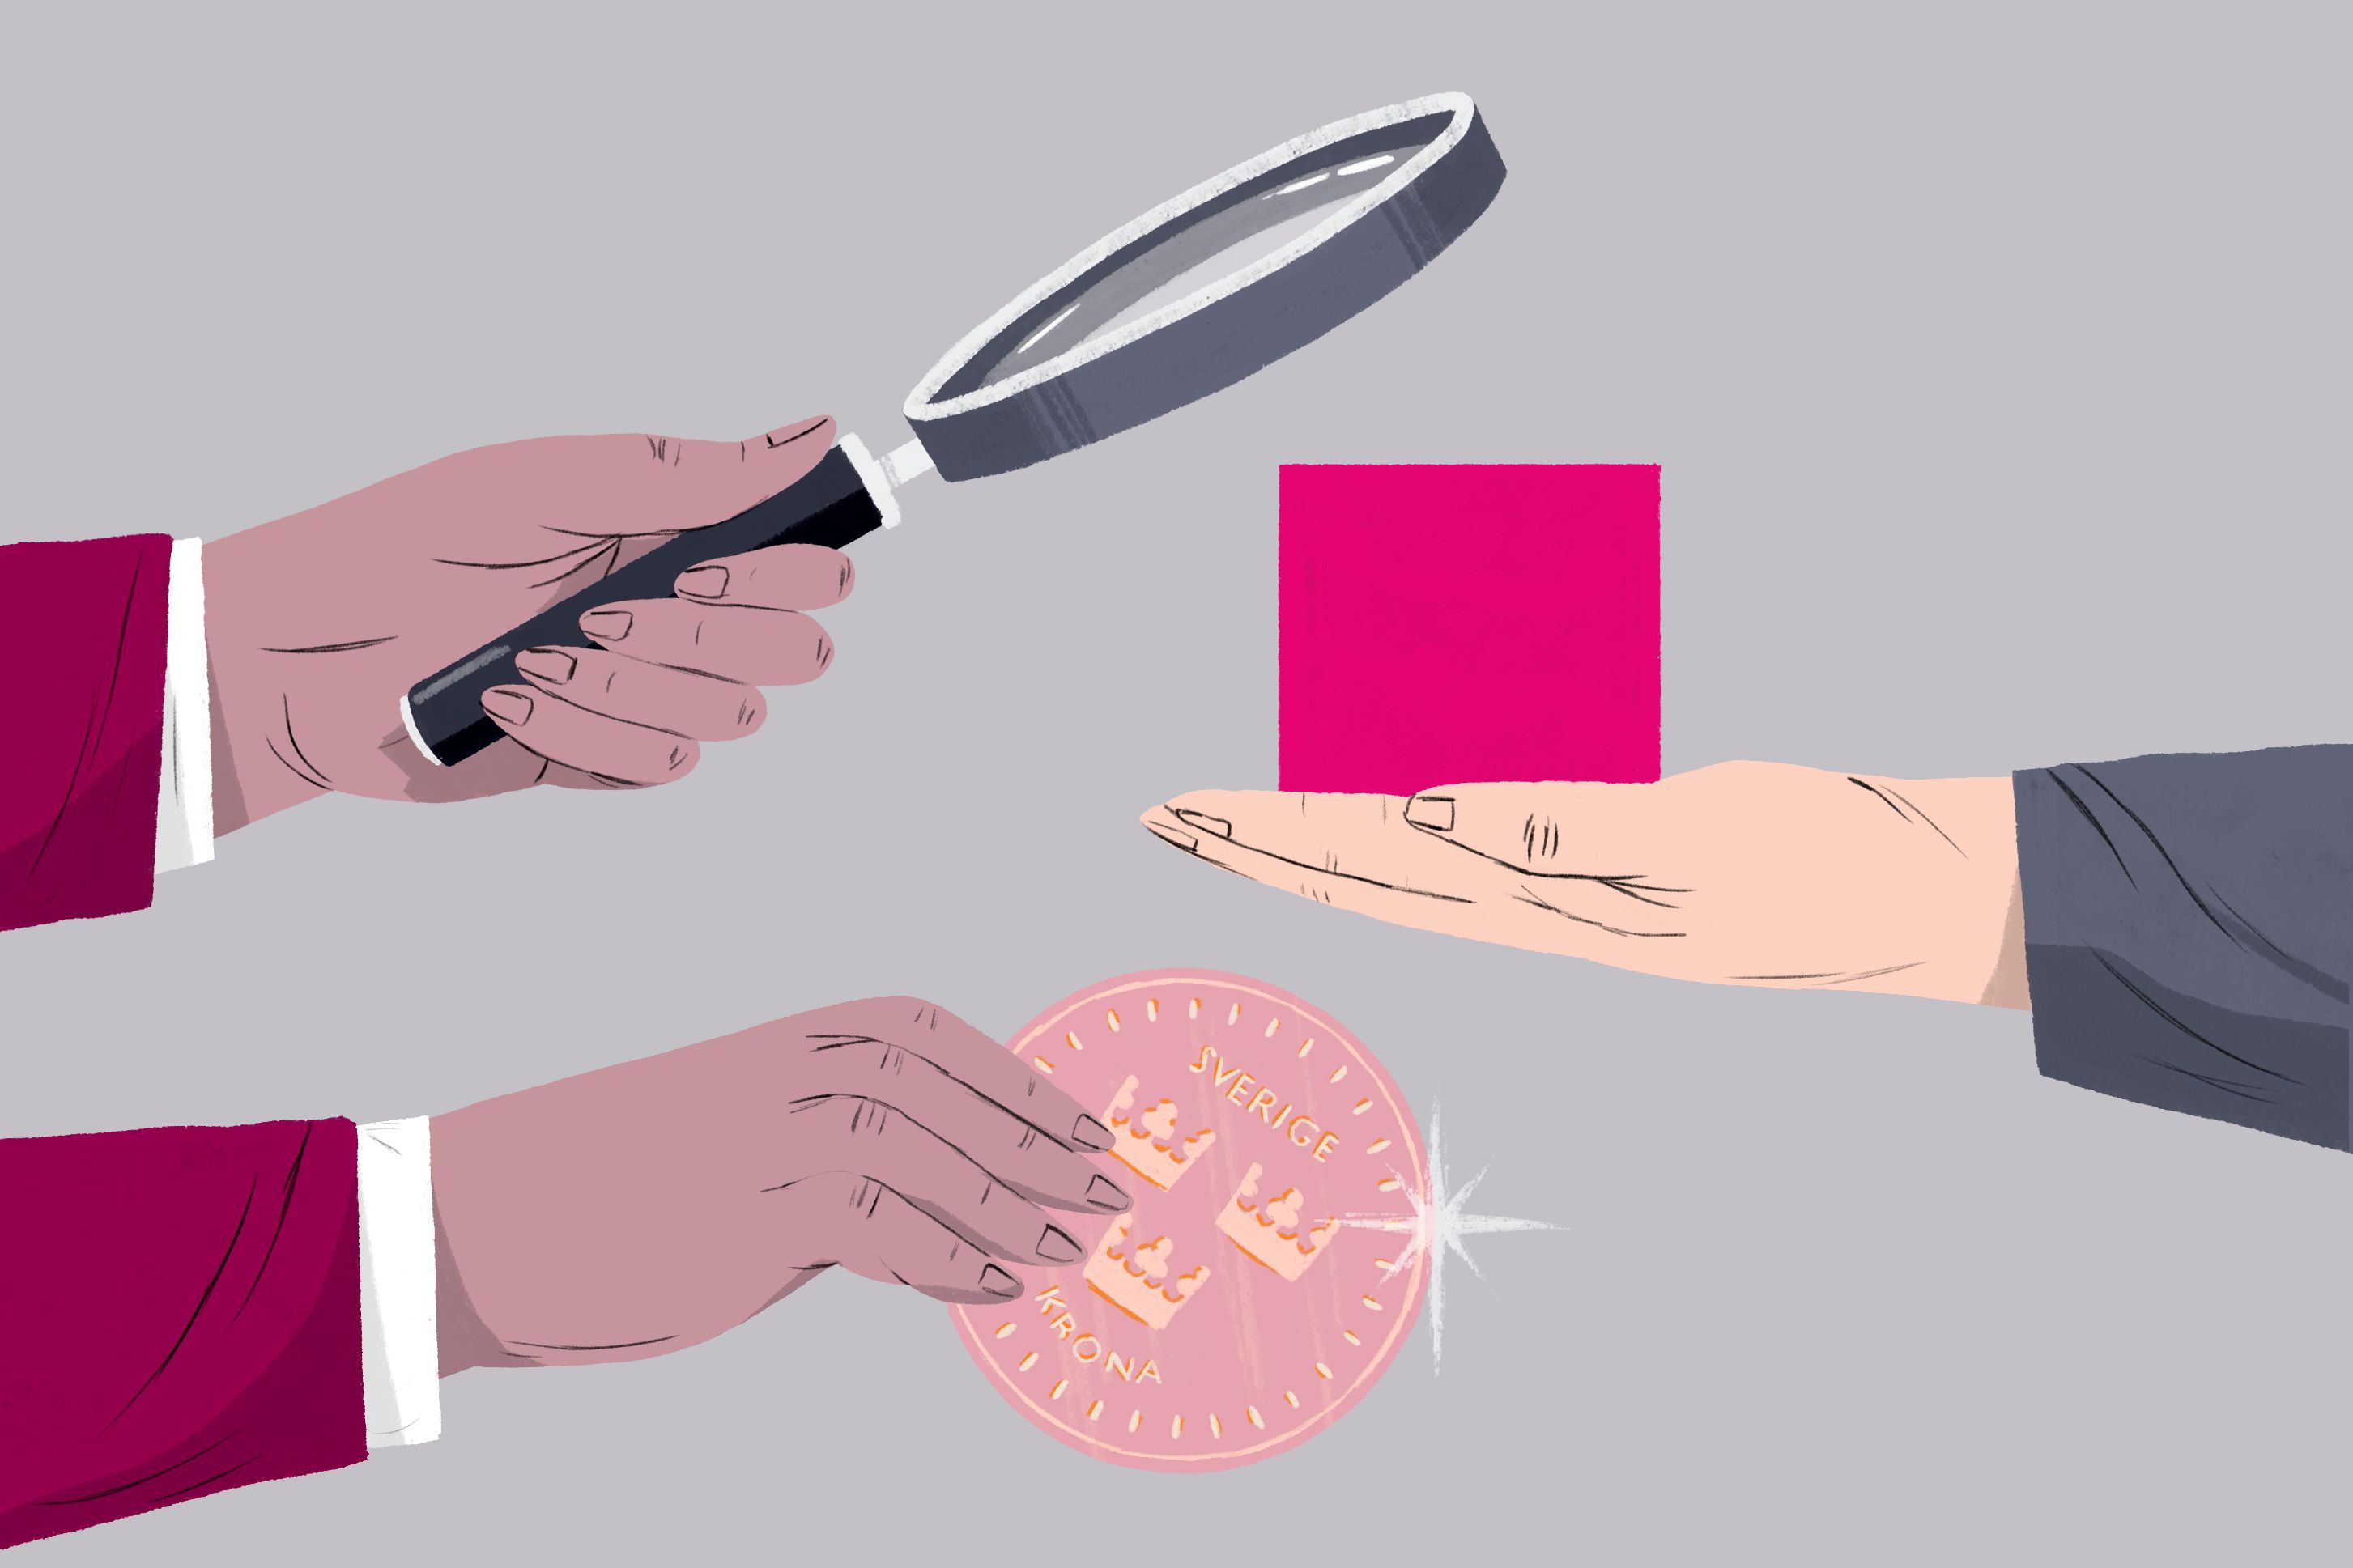 En illustration med en hand som håller en rosa kub som blir granskad med ett förstoringsglas, i utbyte mot ett mynt.